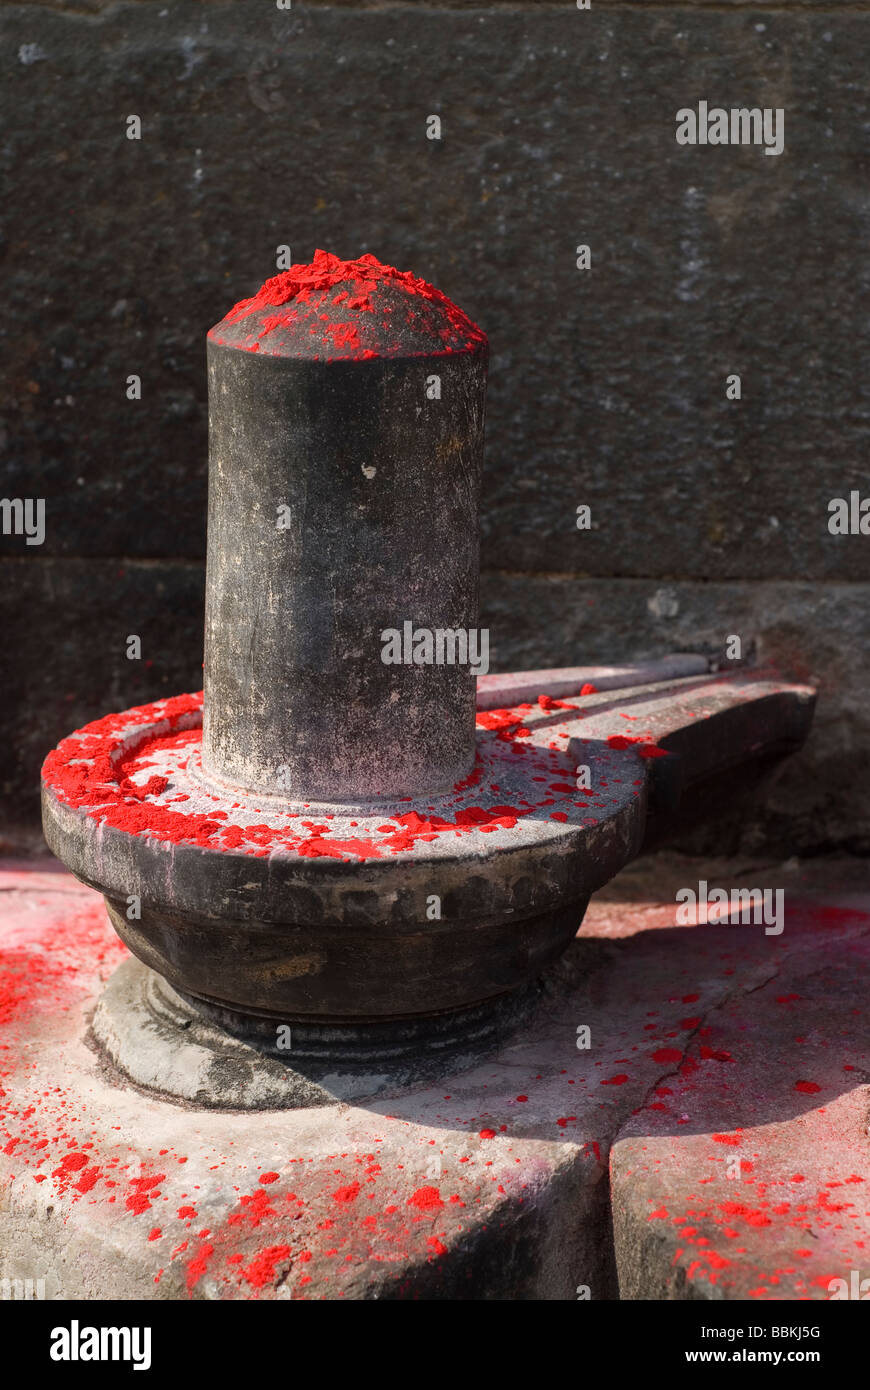 Shiva linga - object of worship for the Hindus. Holi festival, Varanasi, India. Stock Photo